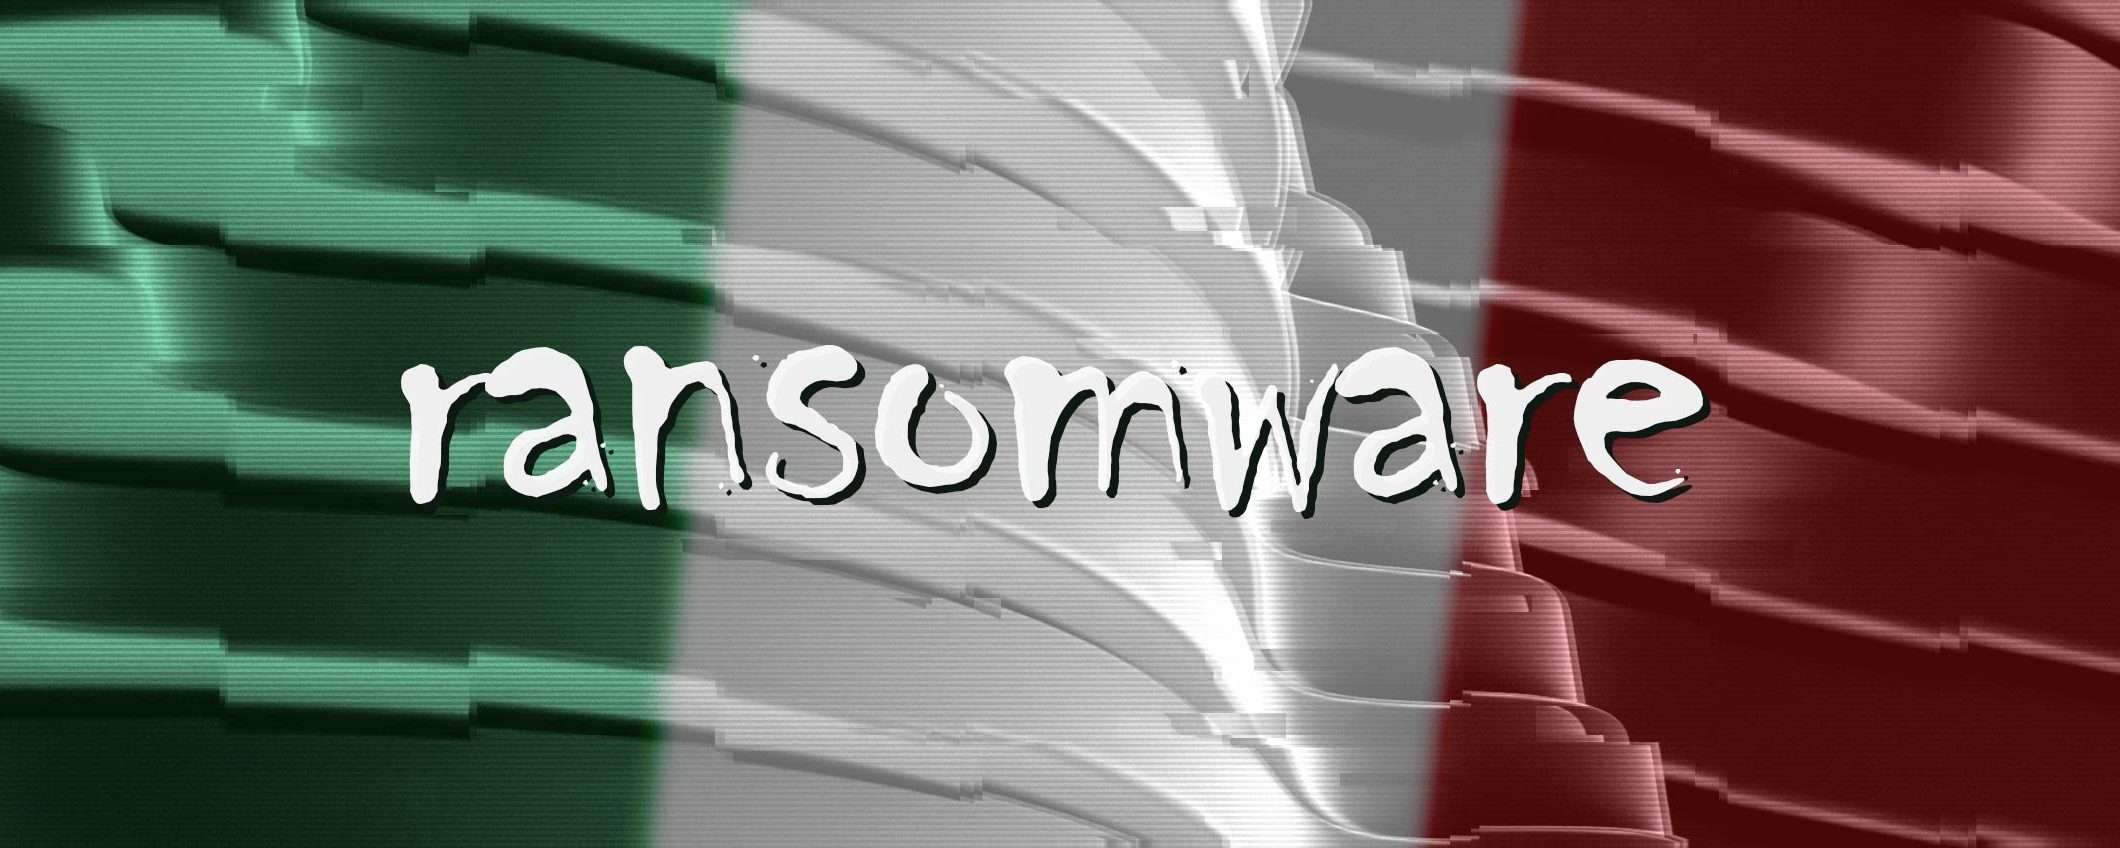 Italia nel mirino dei ransomware: il report